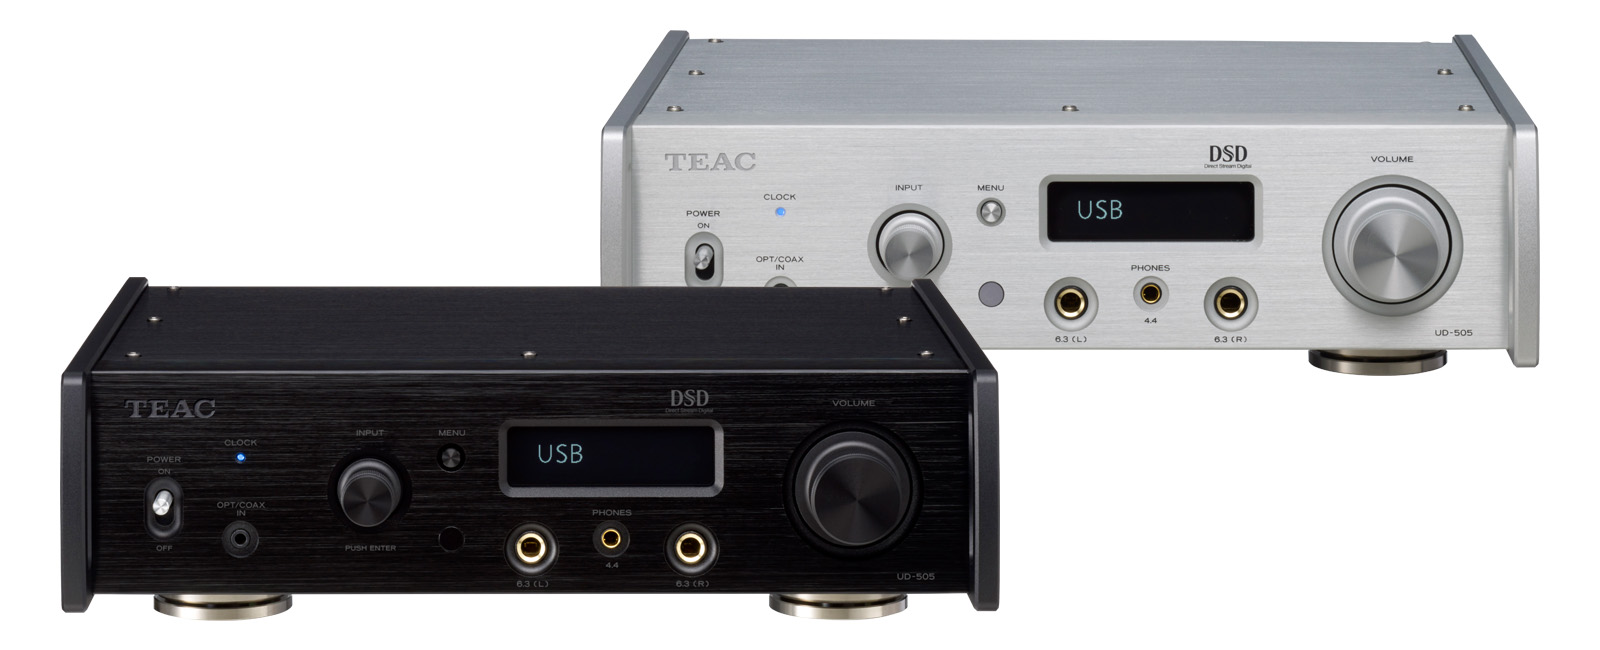 UD-505 | 製品トップ | TEAC - オーディオ製品情報サイト